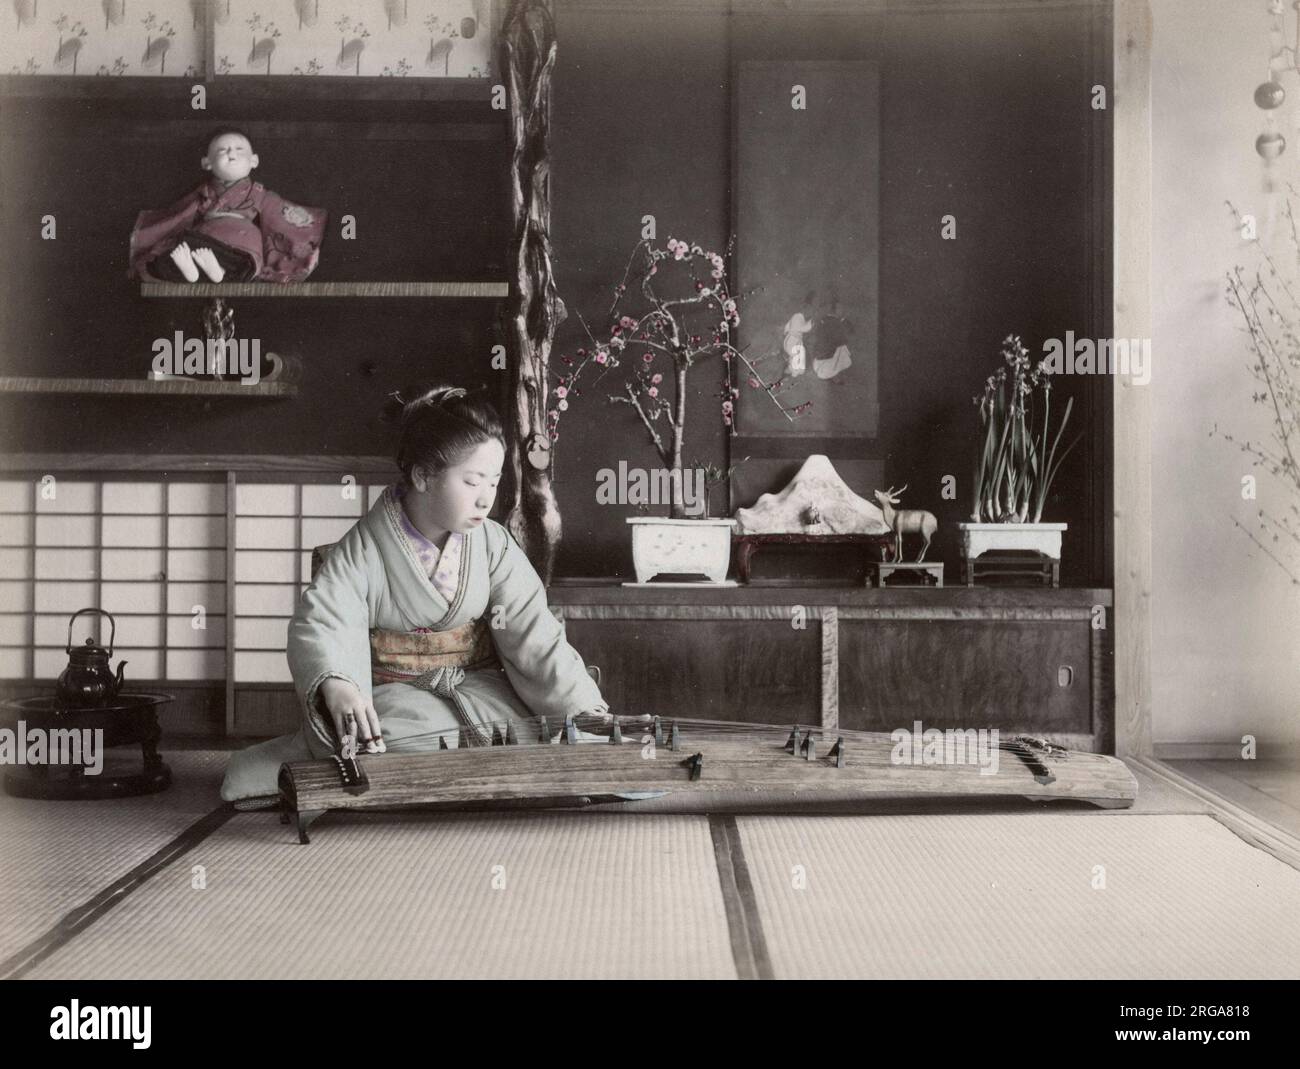 Giovane donna che suona uno strumento musicale a corde koto, Giappone. Vintage 19th ° secolo fotografia. Foto Stock